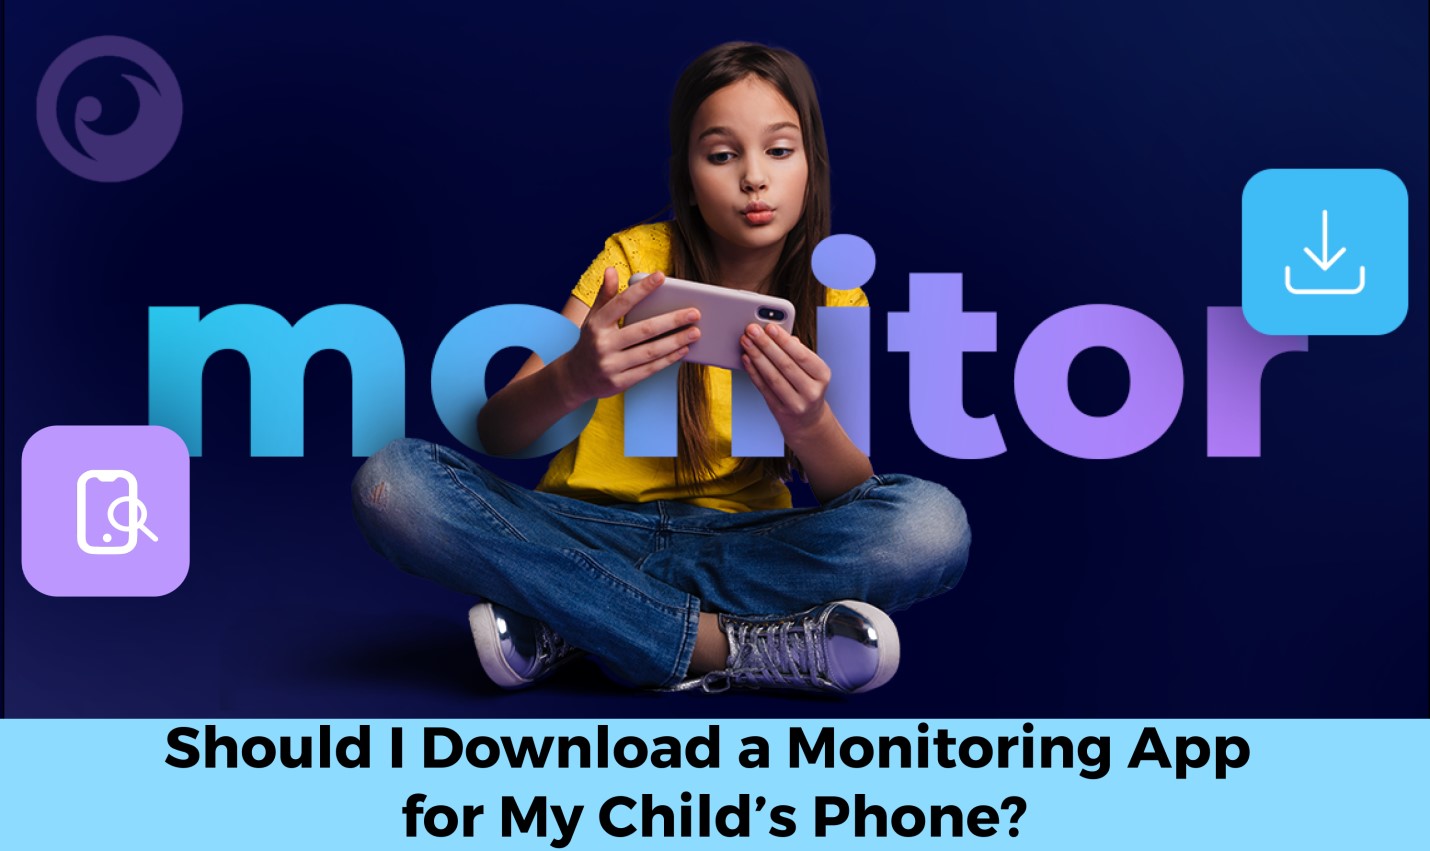 क्या मुझे अपने बच्चे के फ़ोन के लिए एक मॉनिटरिंग ऐप डाउनलोड करना चाहिए? - imei.info पर समाचार इमेजेज